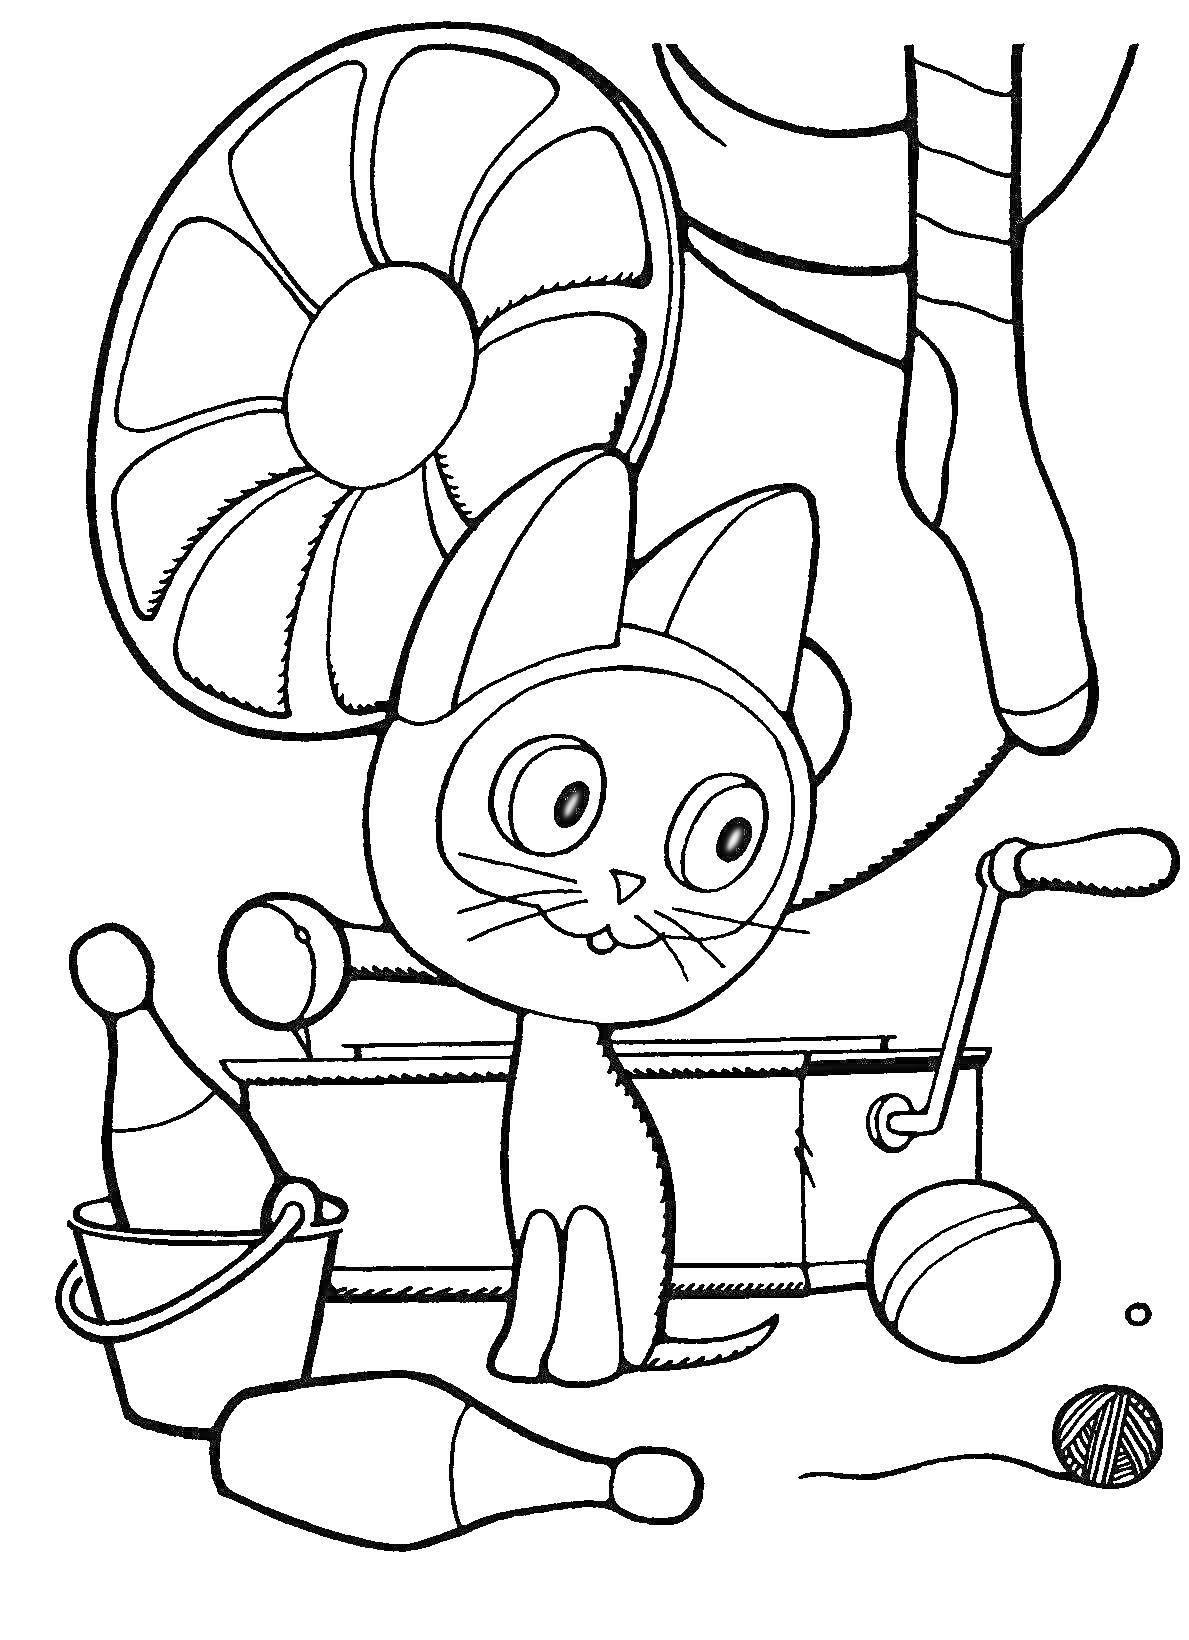 Раскраска Котёнок по имени Гав с барабаном, булавами и клубком ниток